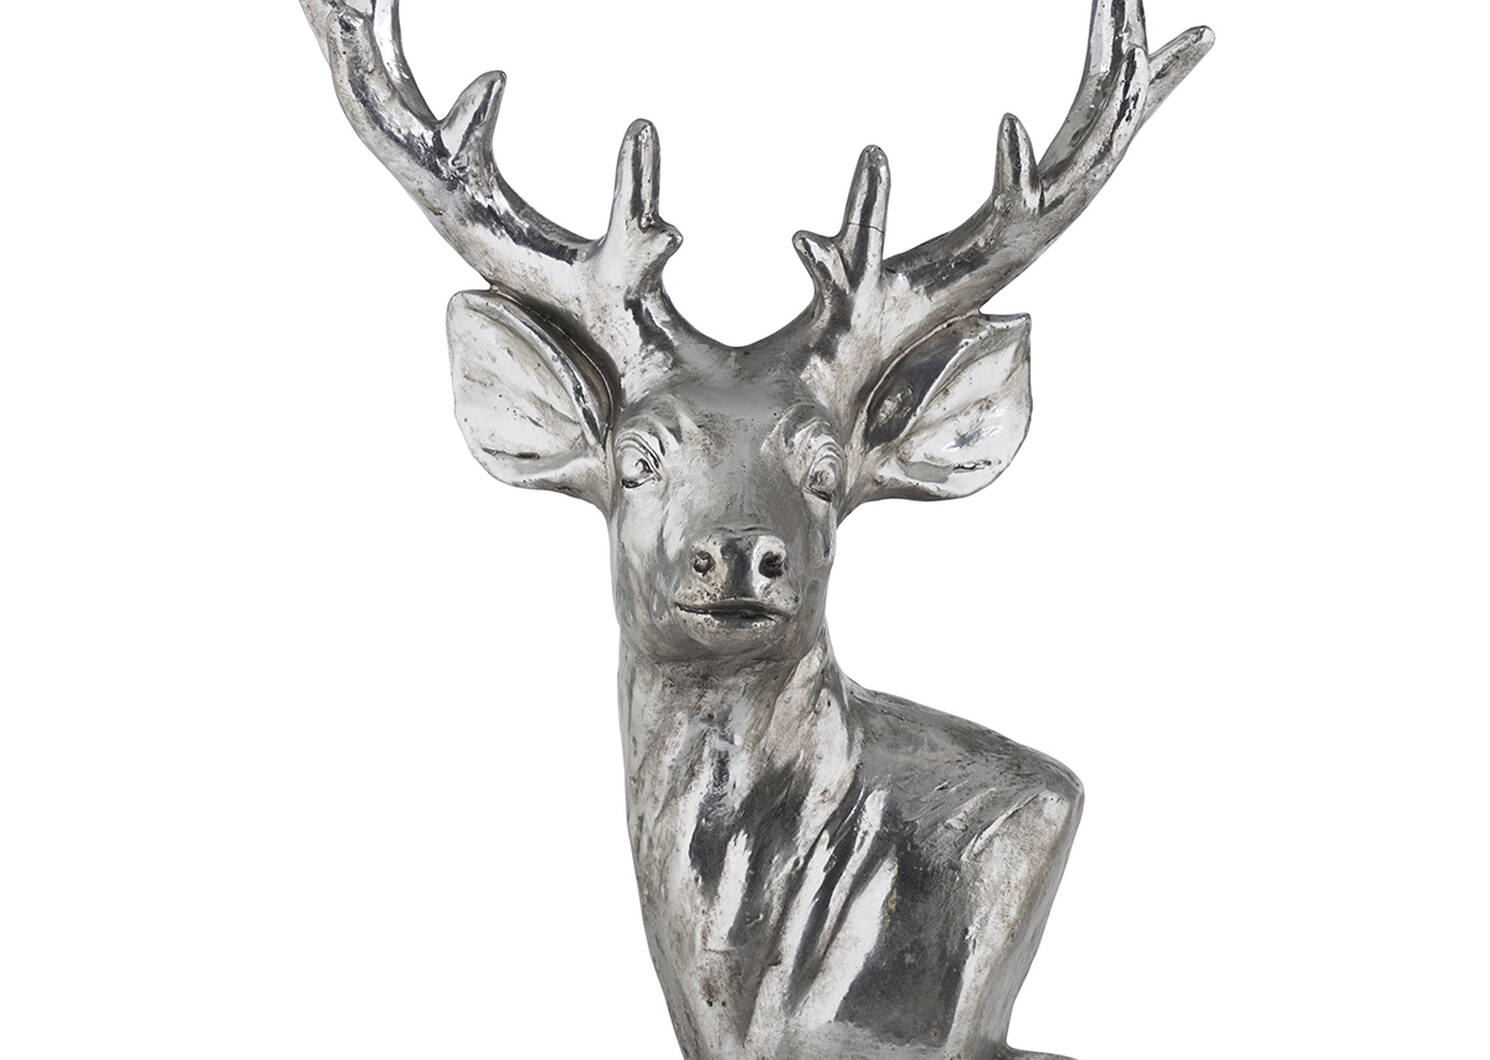 Diego Deer Head Decor Silver